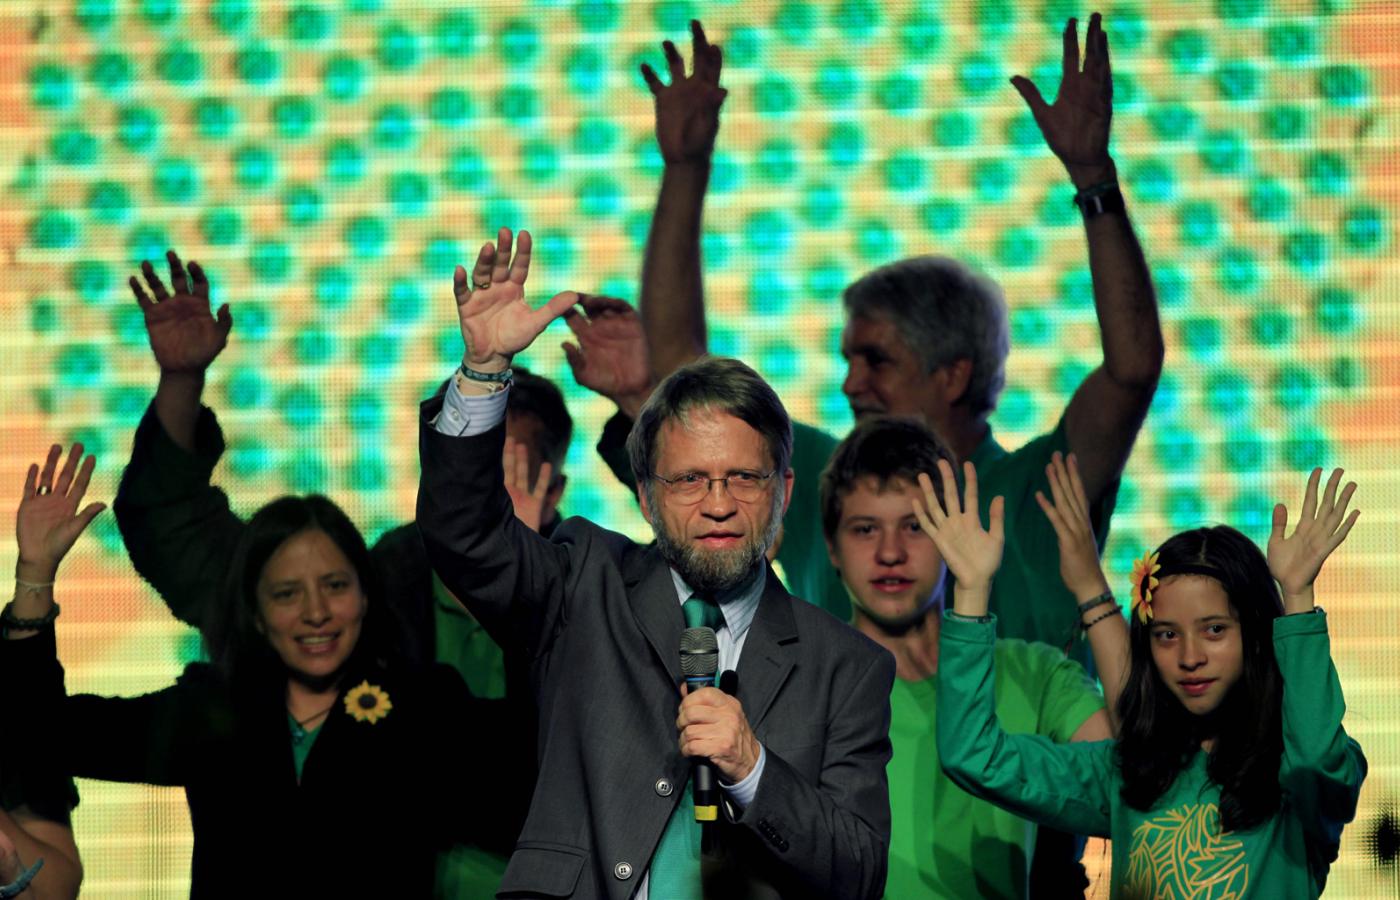 W wyborach prezydenckich dwa lata temu, gdzie Antanas Mockus startował jako kandydat Partii Zielonych, spodziewano się, że zbierze najwyżej kilka procent głosów, a zdobył jedną trzecią.